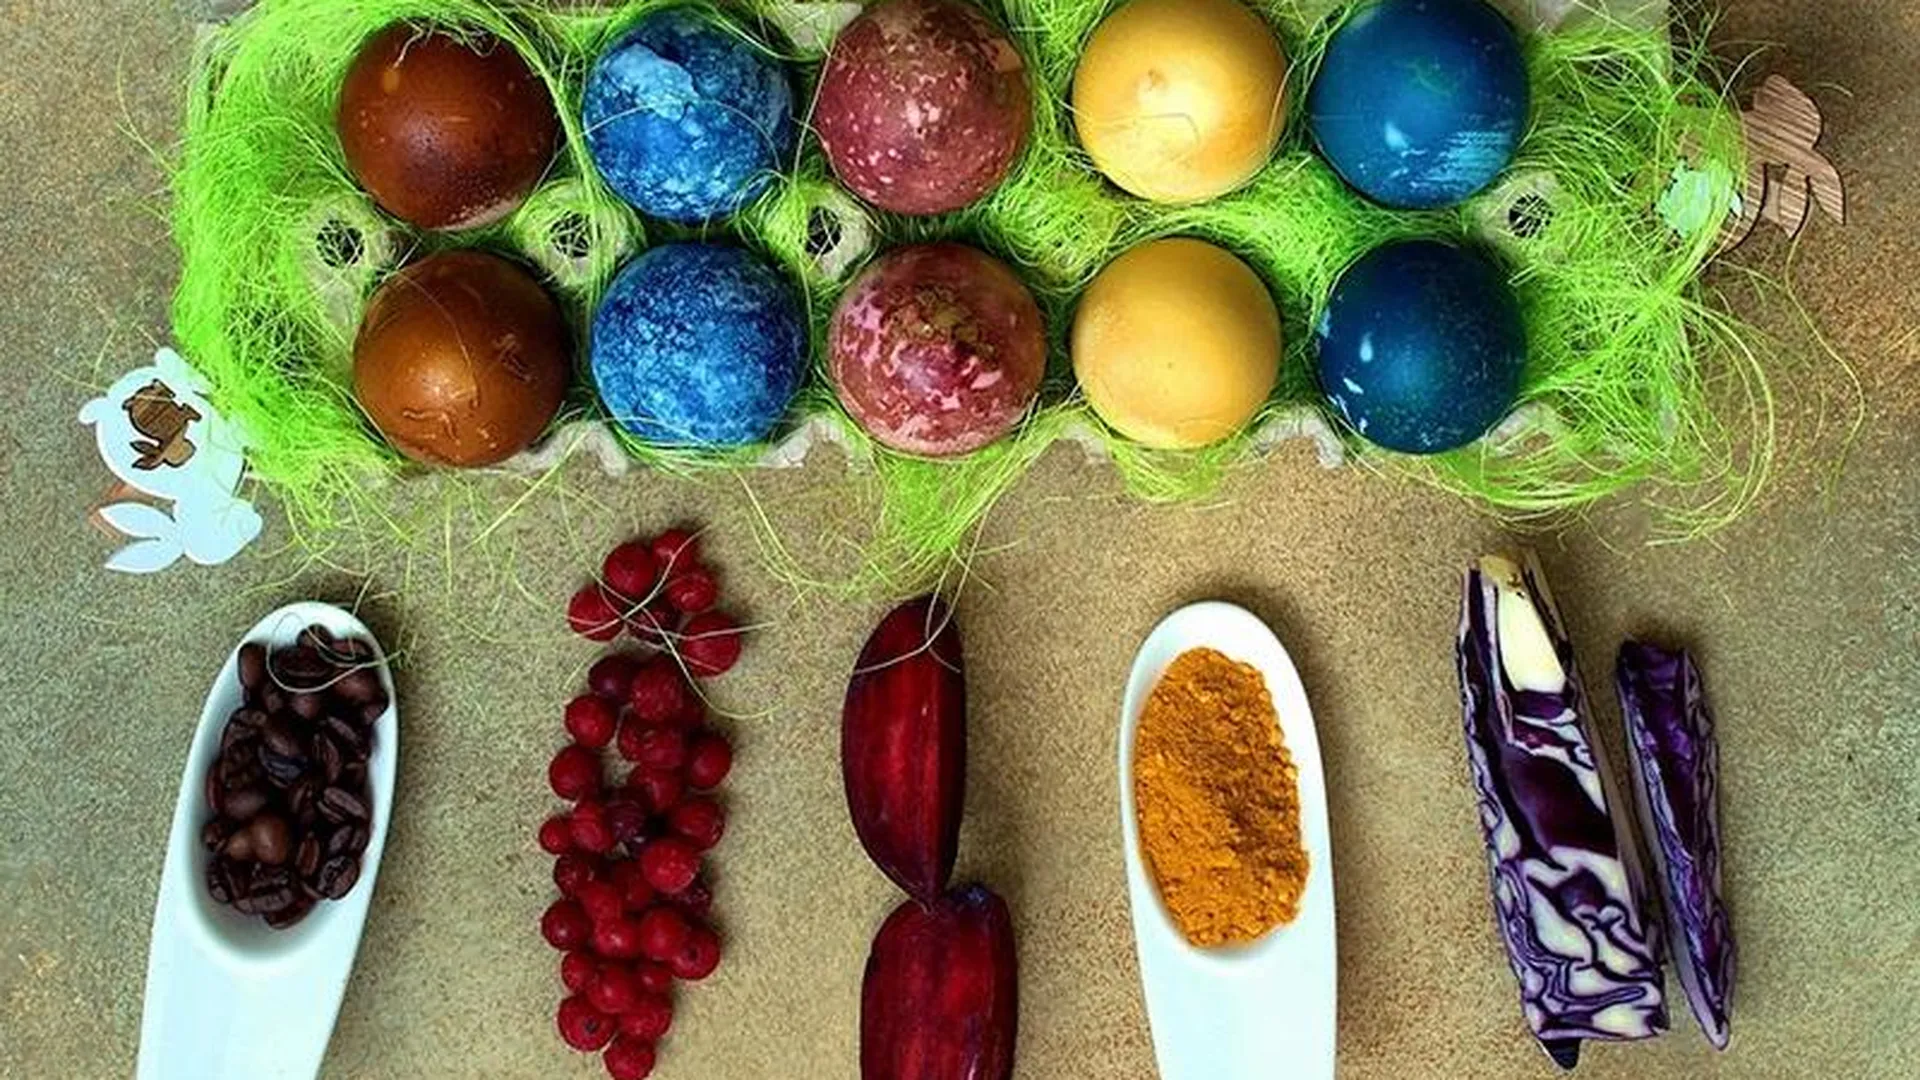 Жители Подмосковья красят пасхальные яйца специями и продуктами, не выходя из дома